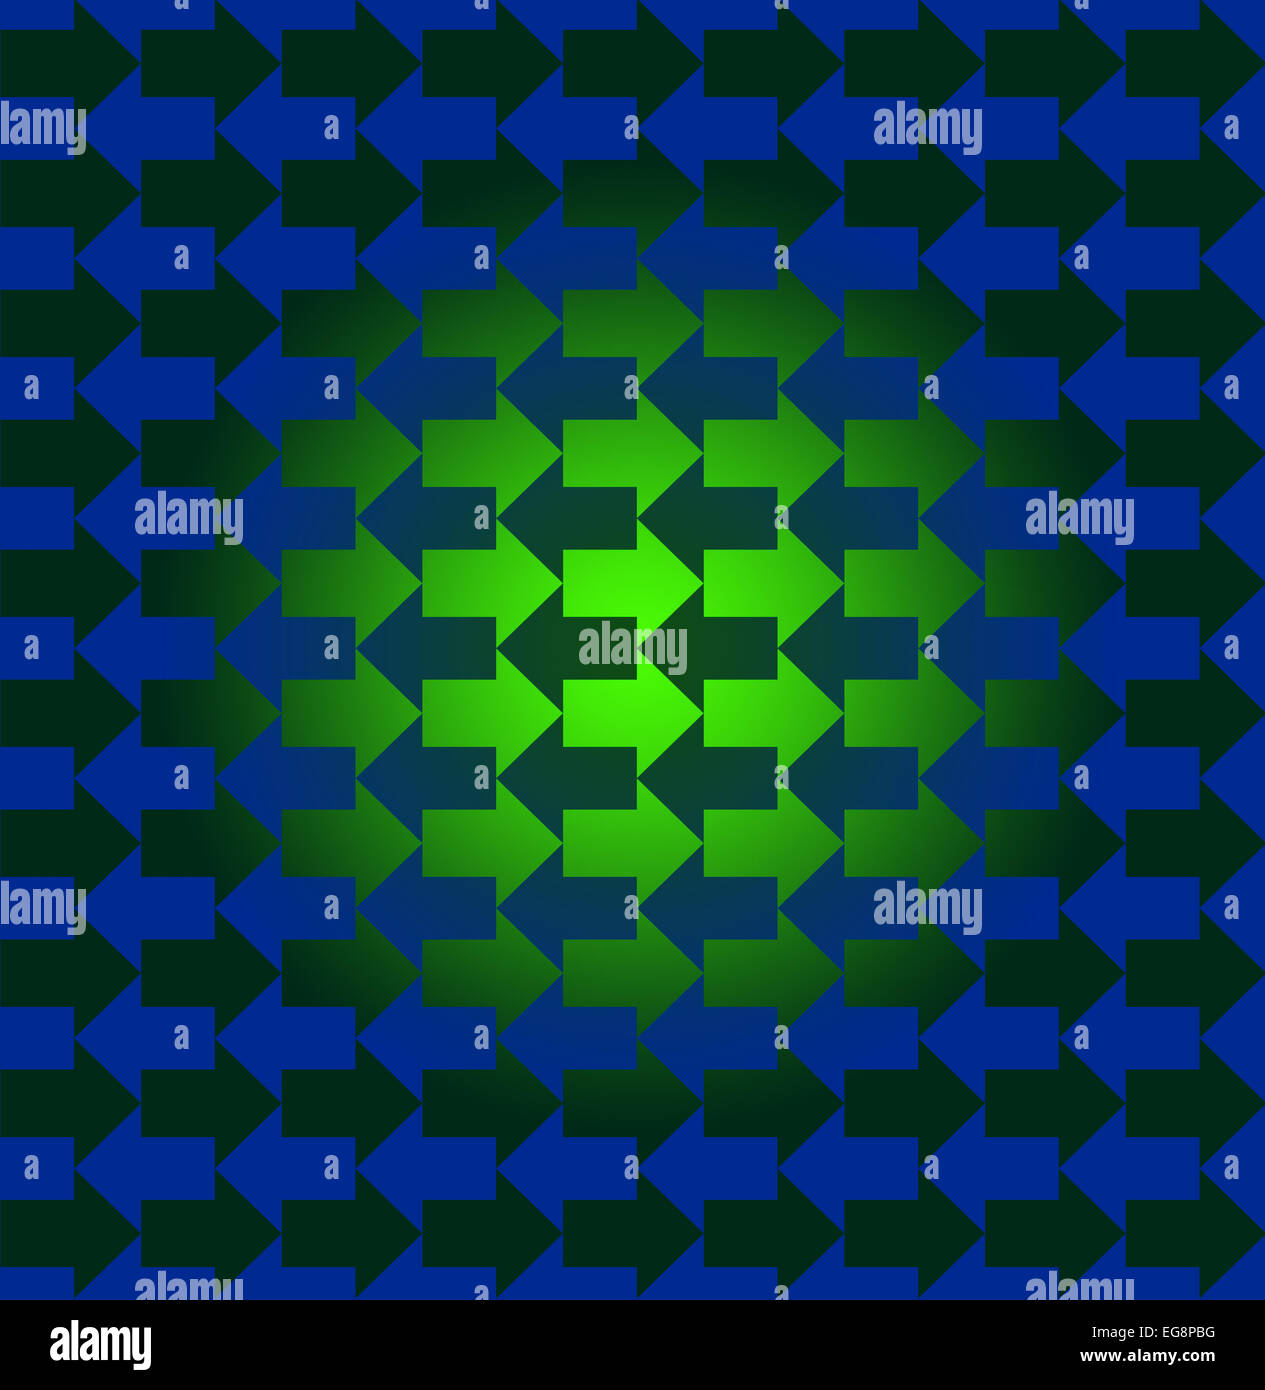 Grüne und blaue Pfeile entgegengesetzte Richtungen, mit einem Farbverlauf machen das Muster sehen dreidimensional in der Mitte Stockfoto